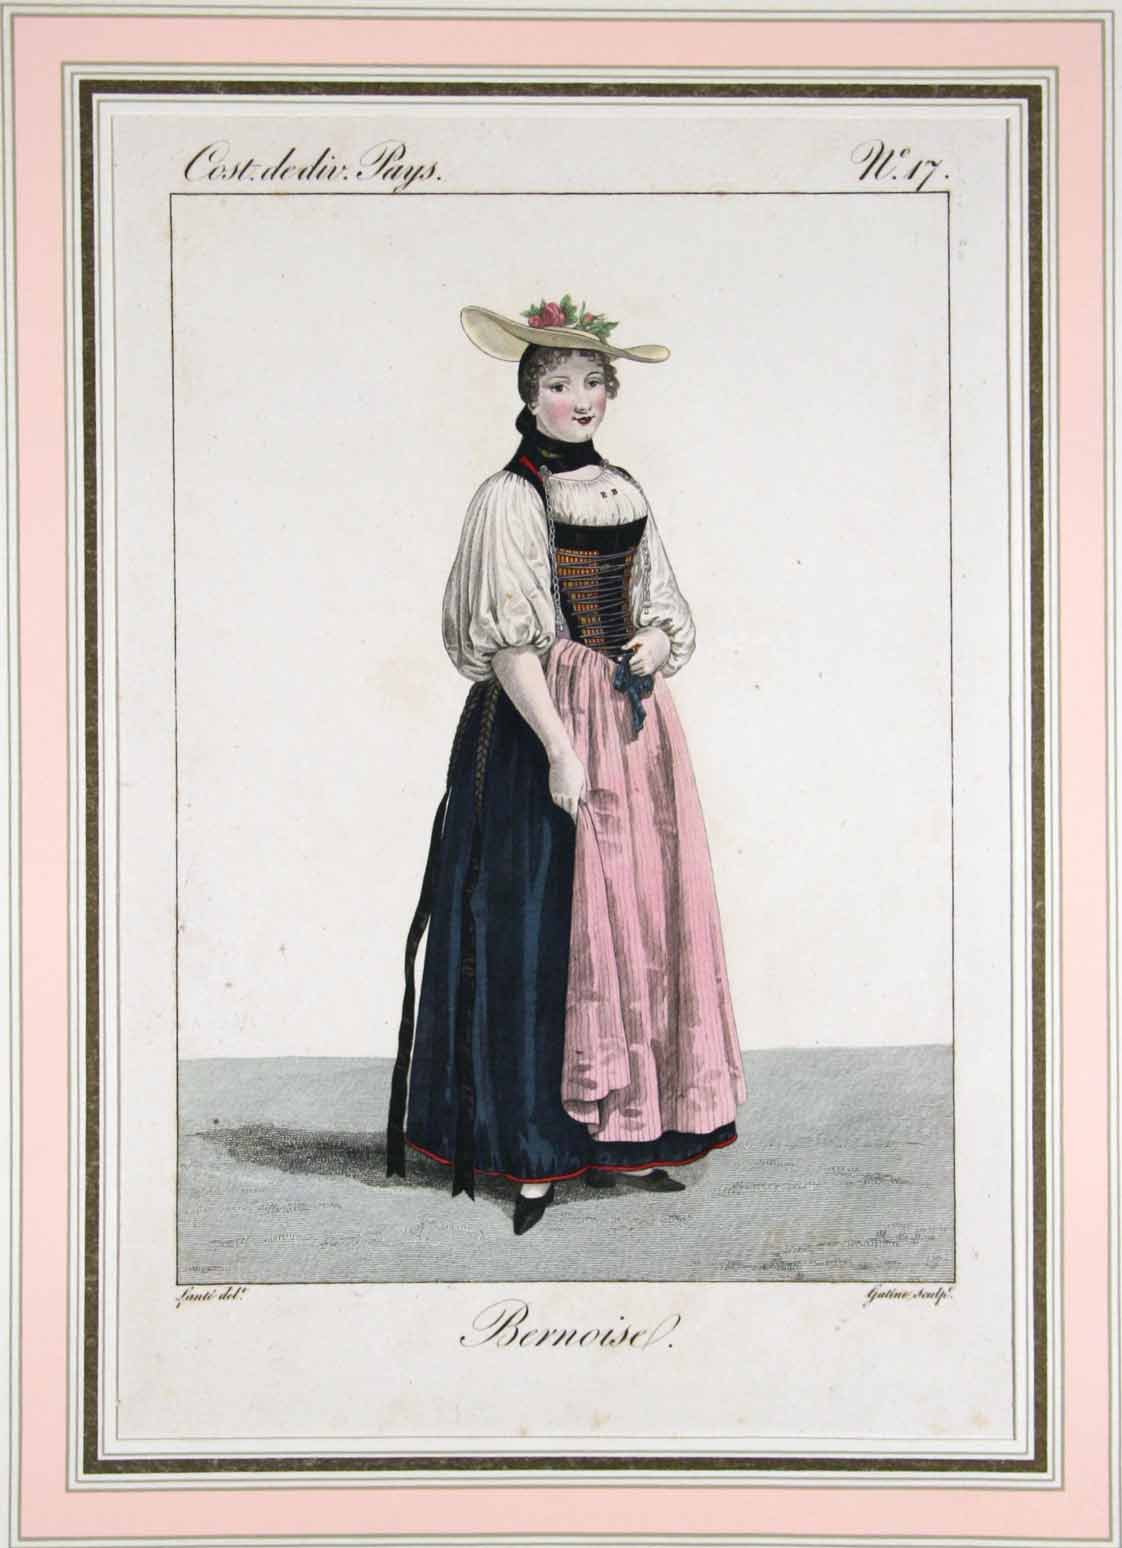 GATINE sc. d'aprs Lant del.: - Costume d'une Bernoise. 'Costumes de div. Pays' n 17.